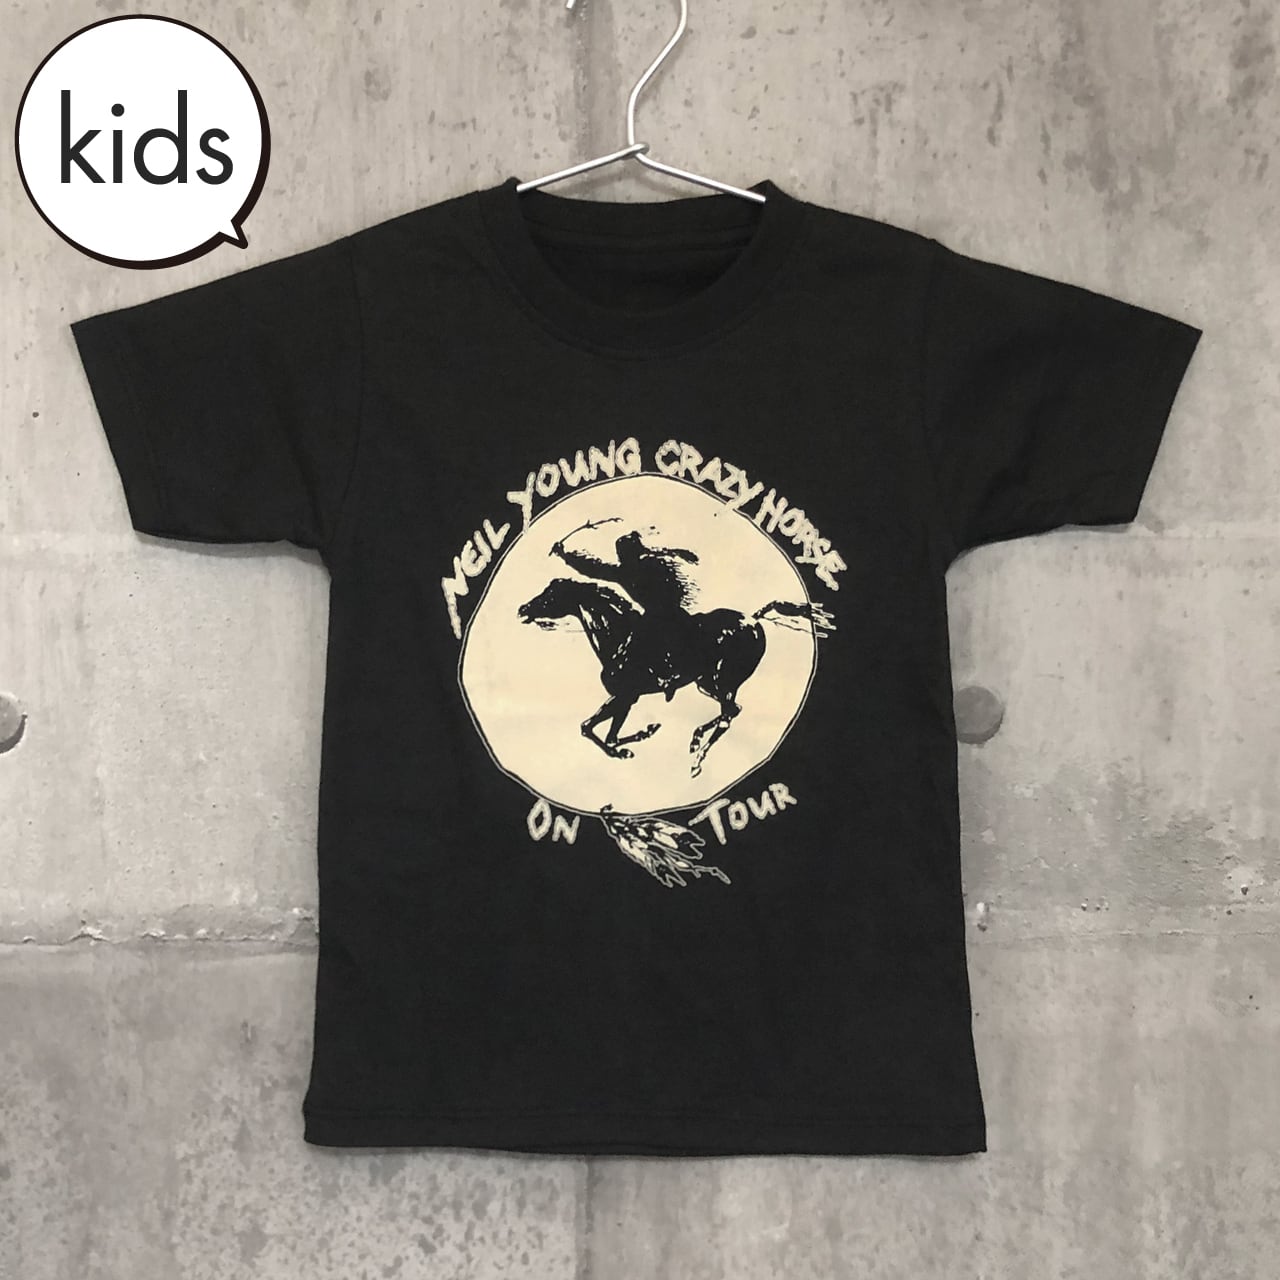 送料無料 / ロック バンド Tシャツ】 NEIL YOUNG & CRAZY HORSE / Kids ...